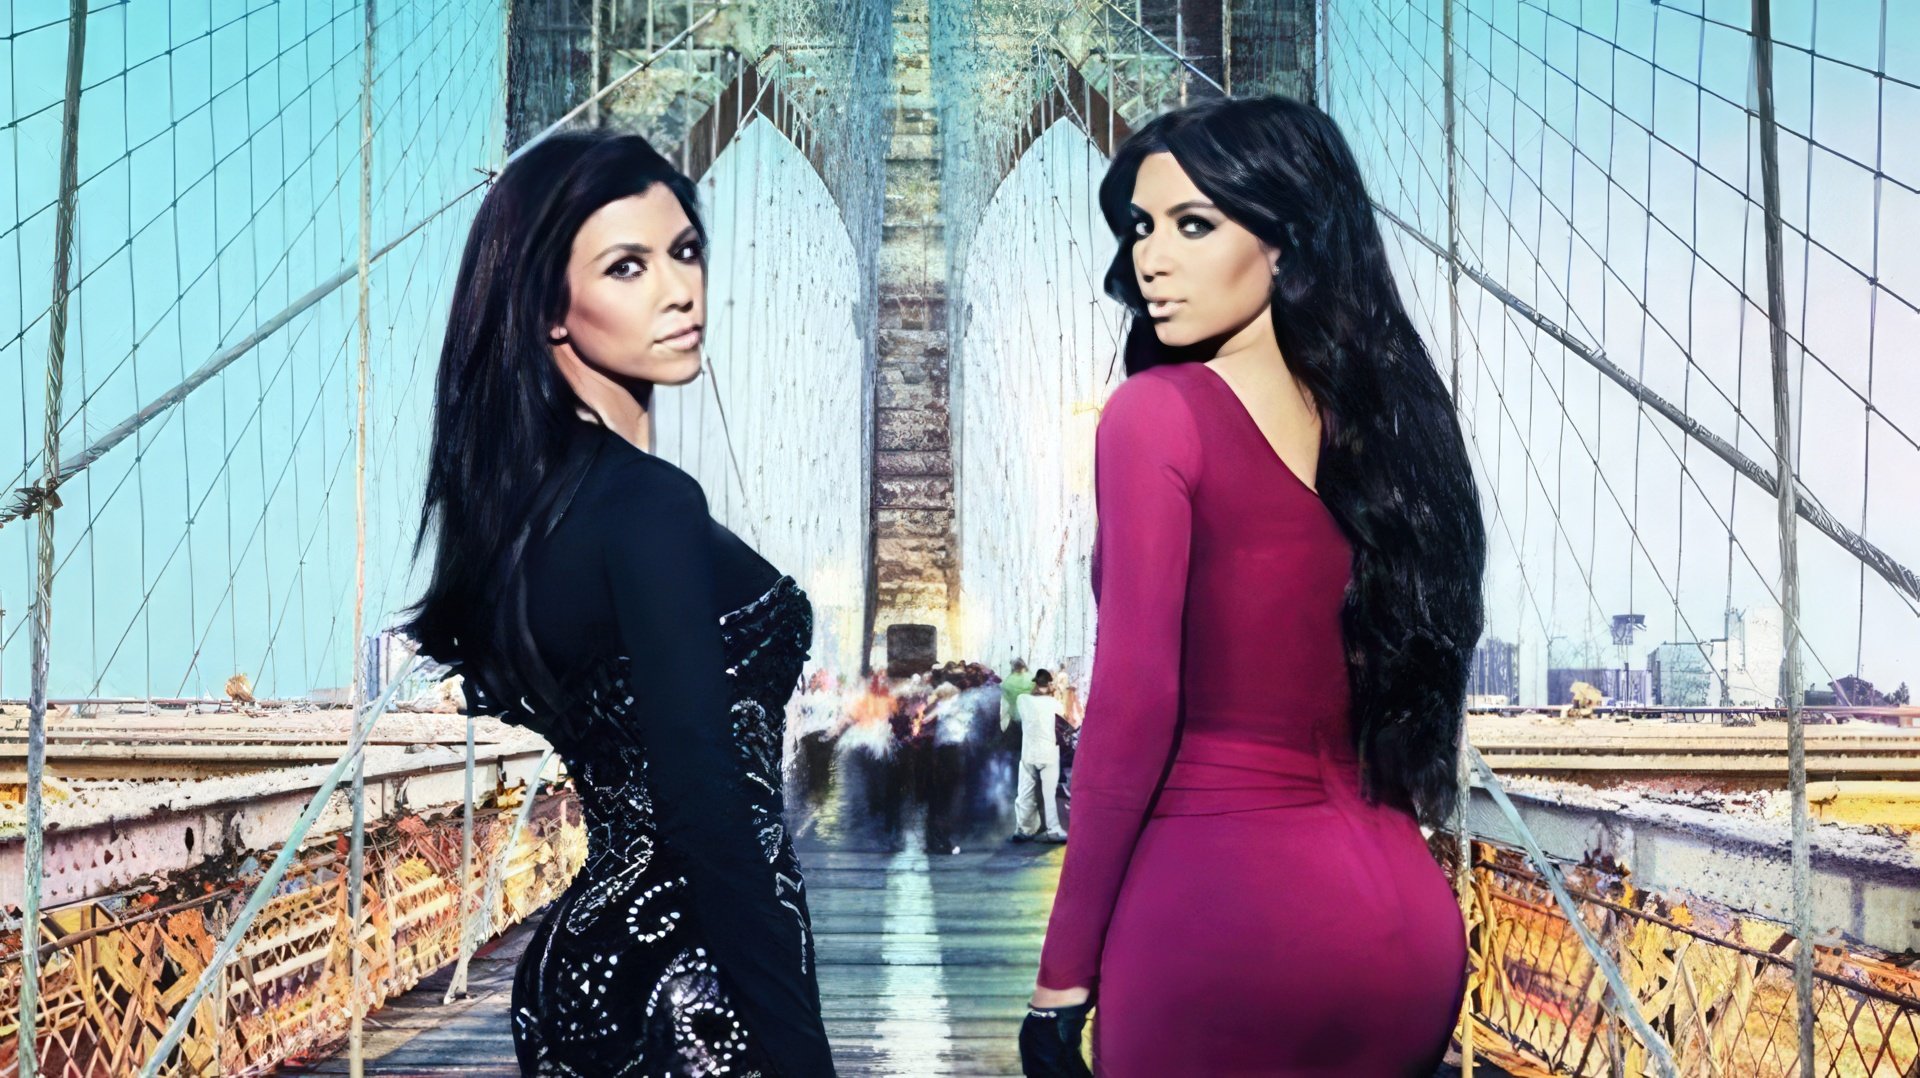 Kourtney Kardashian in the Kourtney and Kim Take New York show